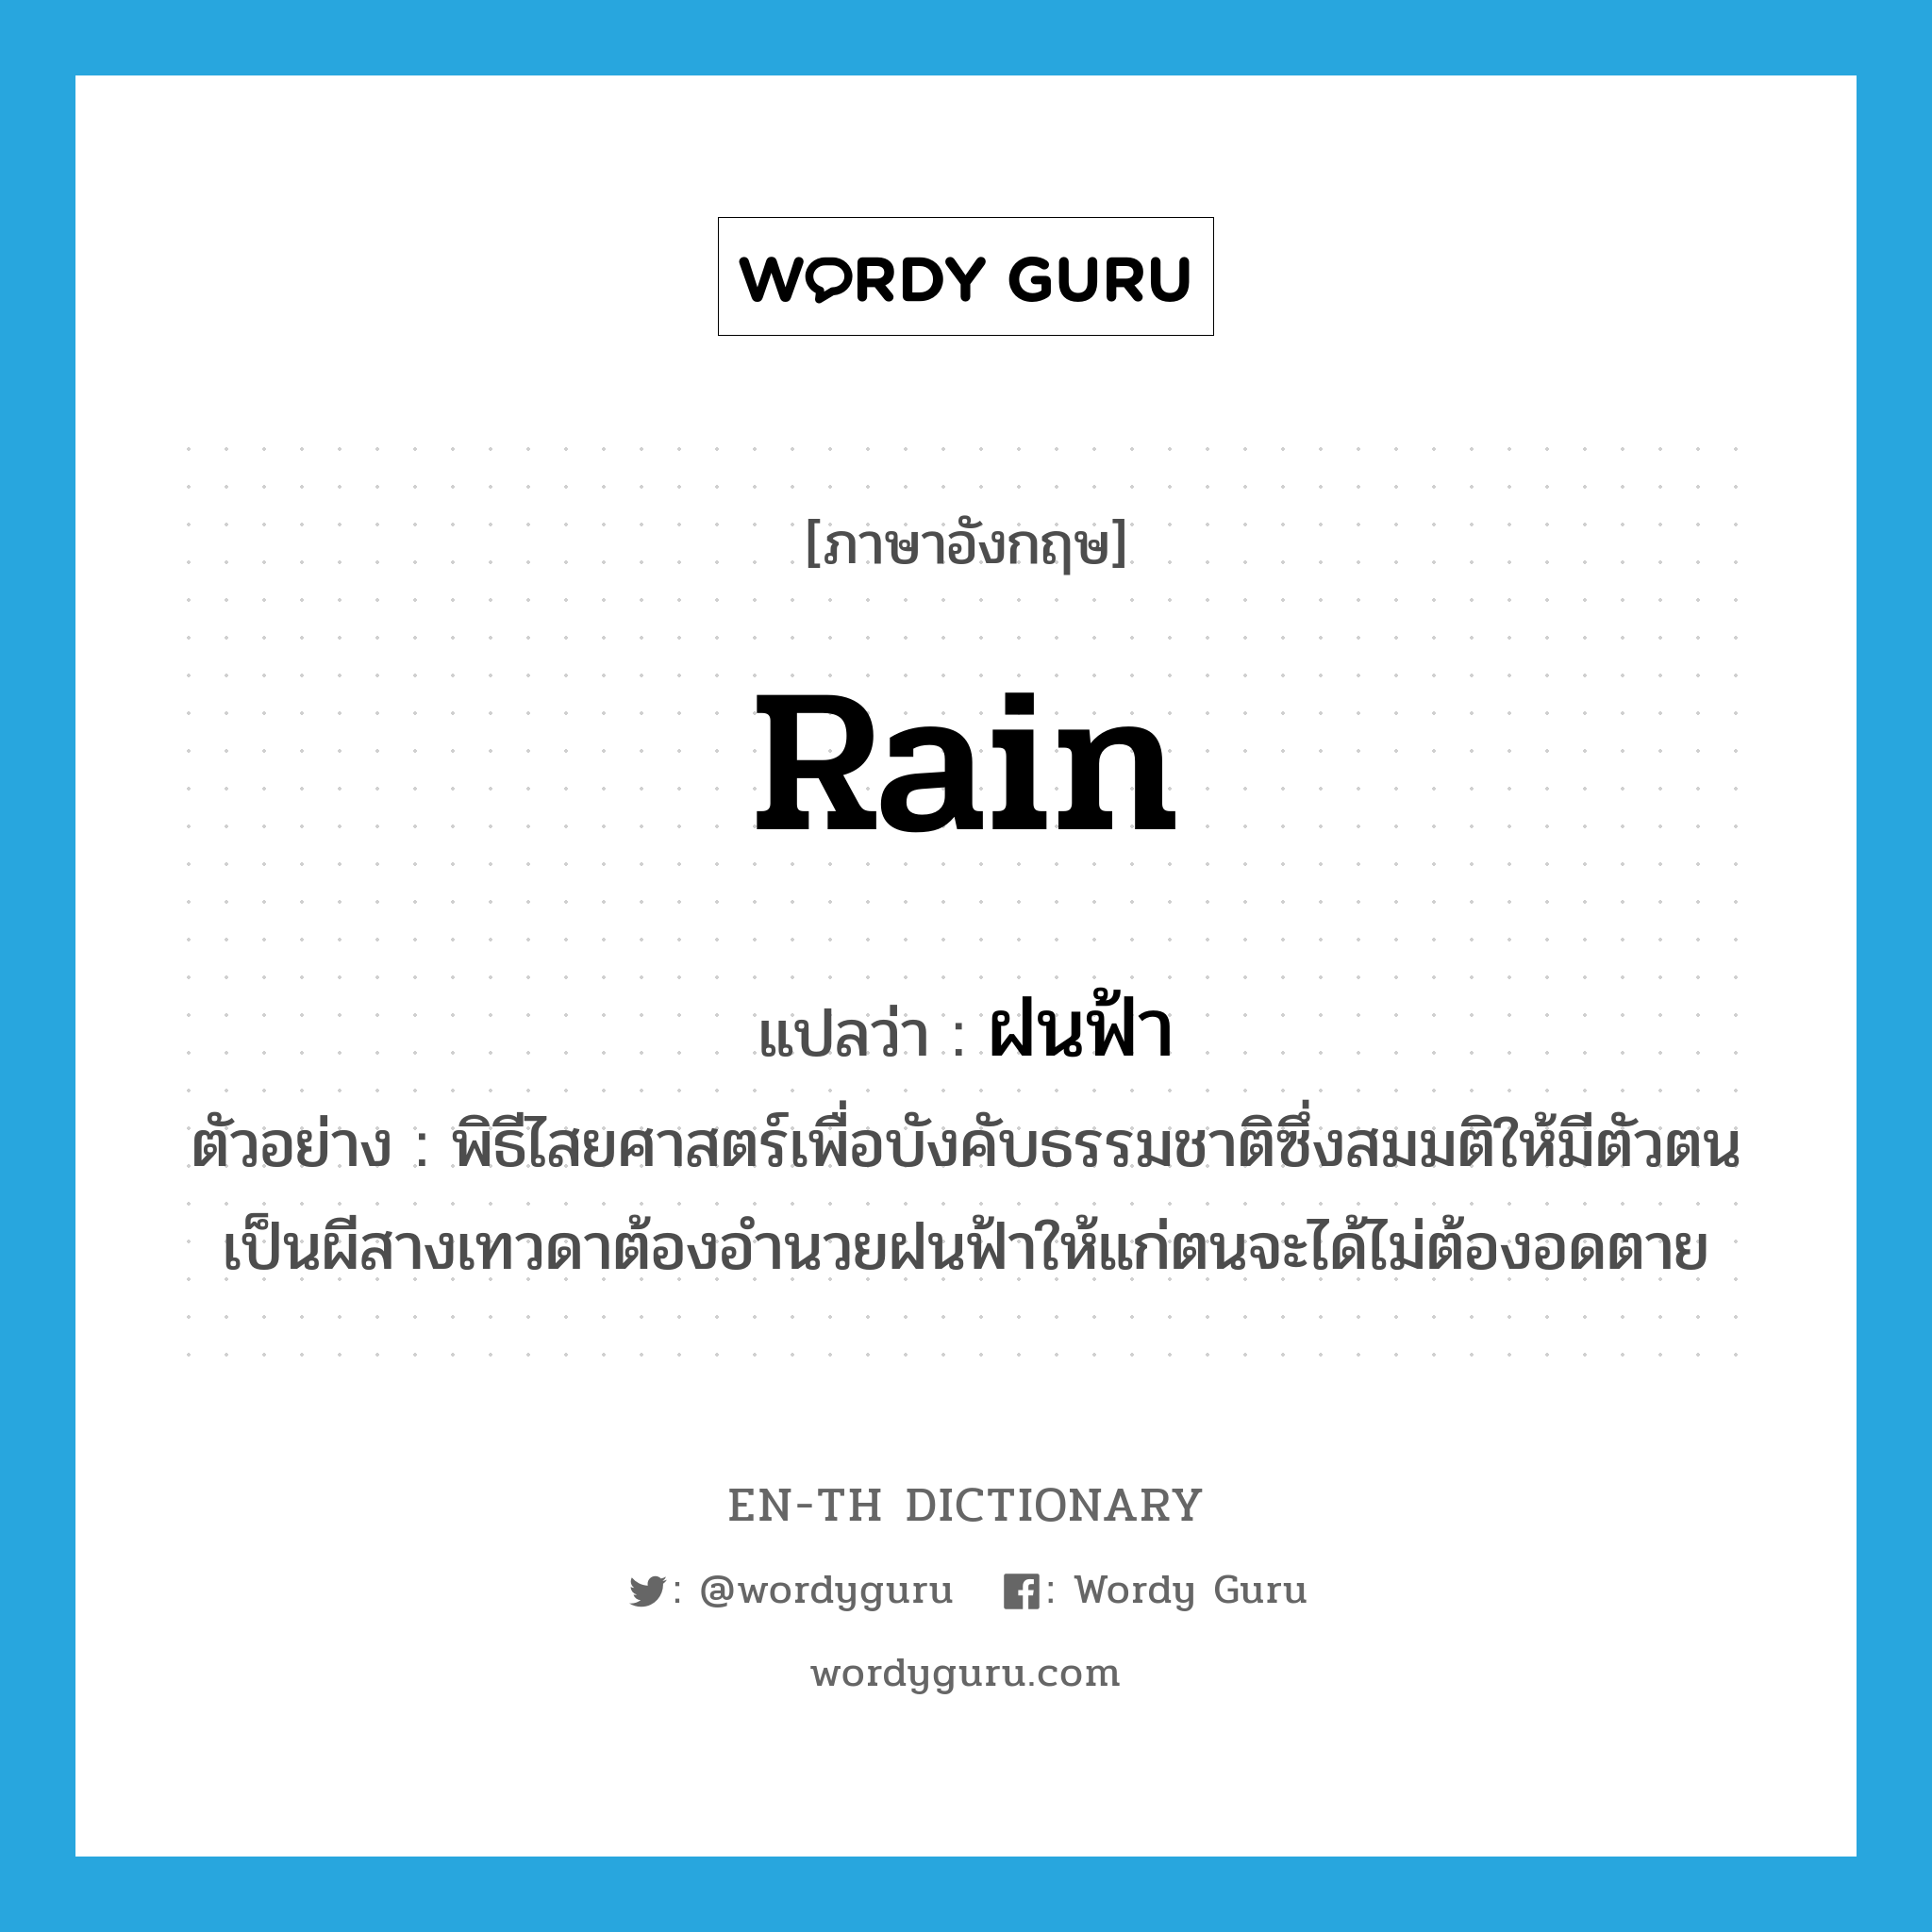 ฝนฟ้า ภาษาอังกฤษ?, คำศัพท์ภาษาอังกฤษ ฝนฟ้า แปลว่า rain ประเภท N ตัวอย่าง พิธีไสยศาสตร์เพื่อบังคับธรรมชาติซึ่งสมมติให้มีตัวตนเป็นผีสางเทวดาต้องอำนวยฝนฟ้าให้แก่ตนจะได้ไม่ต้องอดตาย หมวด N